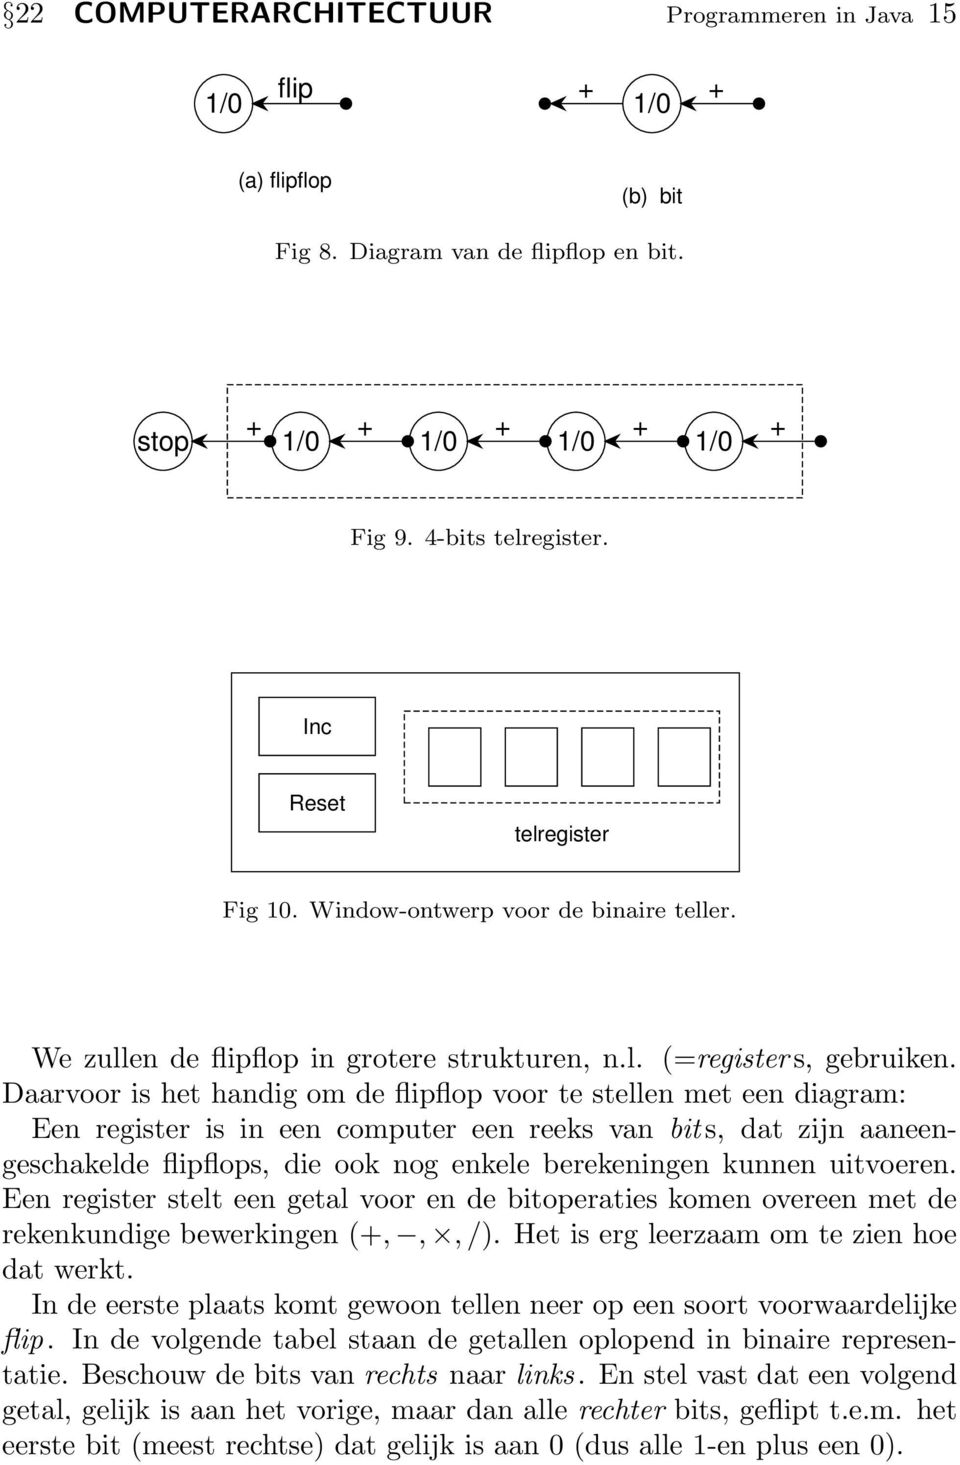 Daarvoor is het handig om de flipflop voor te stellen met een diagram: Een register is in een computer een reeks van bit s, dat zijn aaneengeschakelde flipflops, die ook nog enkele berekeningen